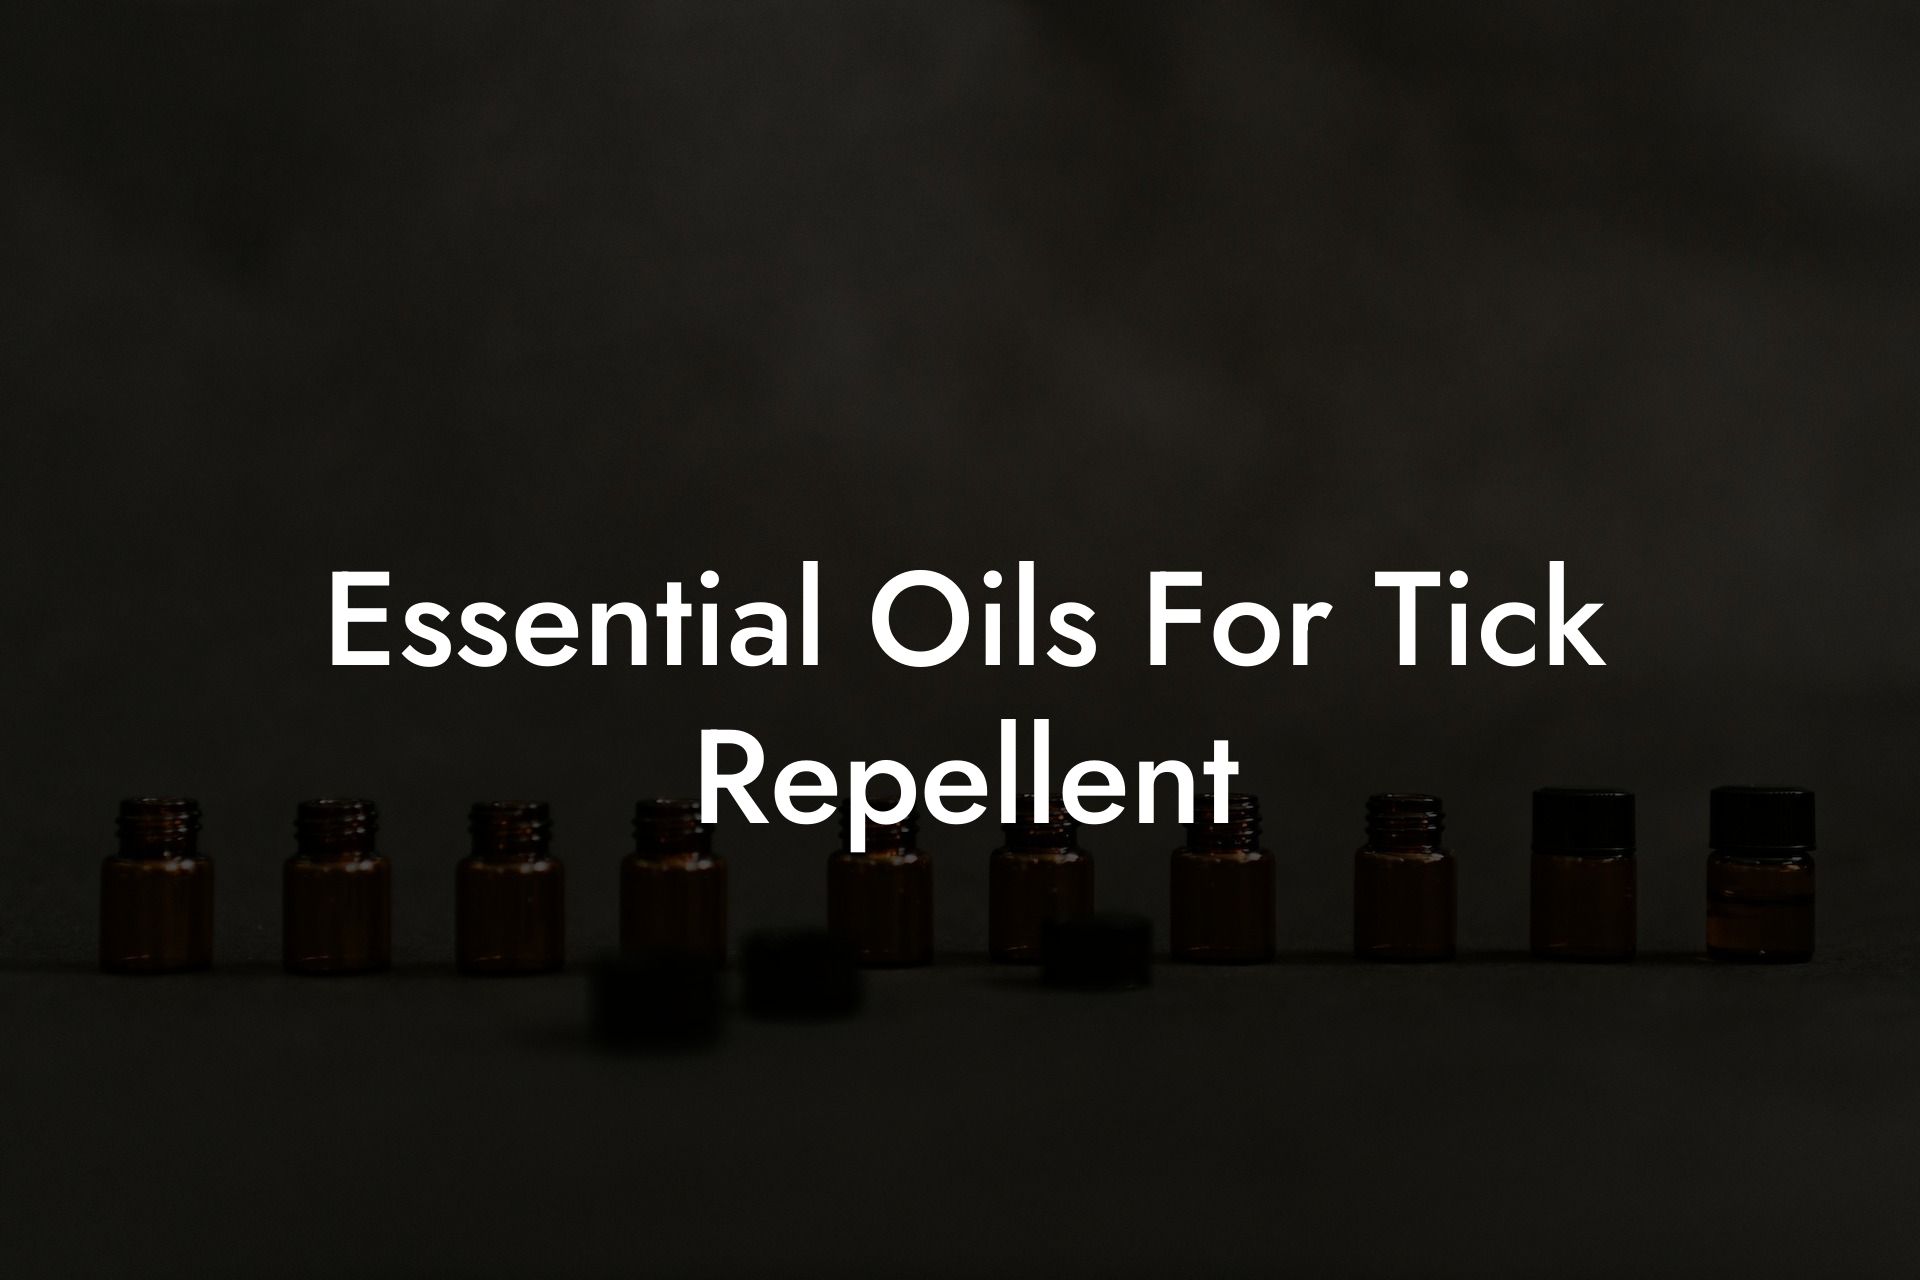 Essential Oils For Tick Repellent